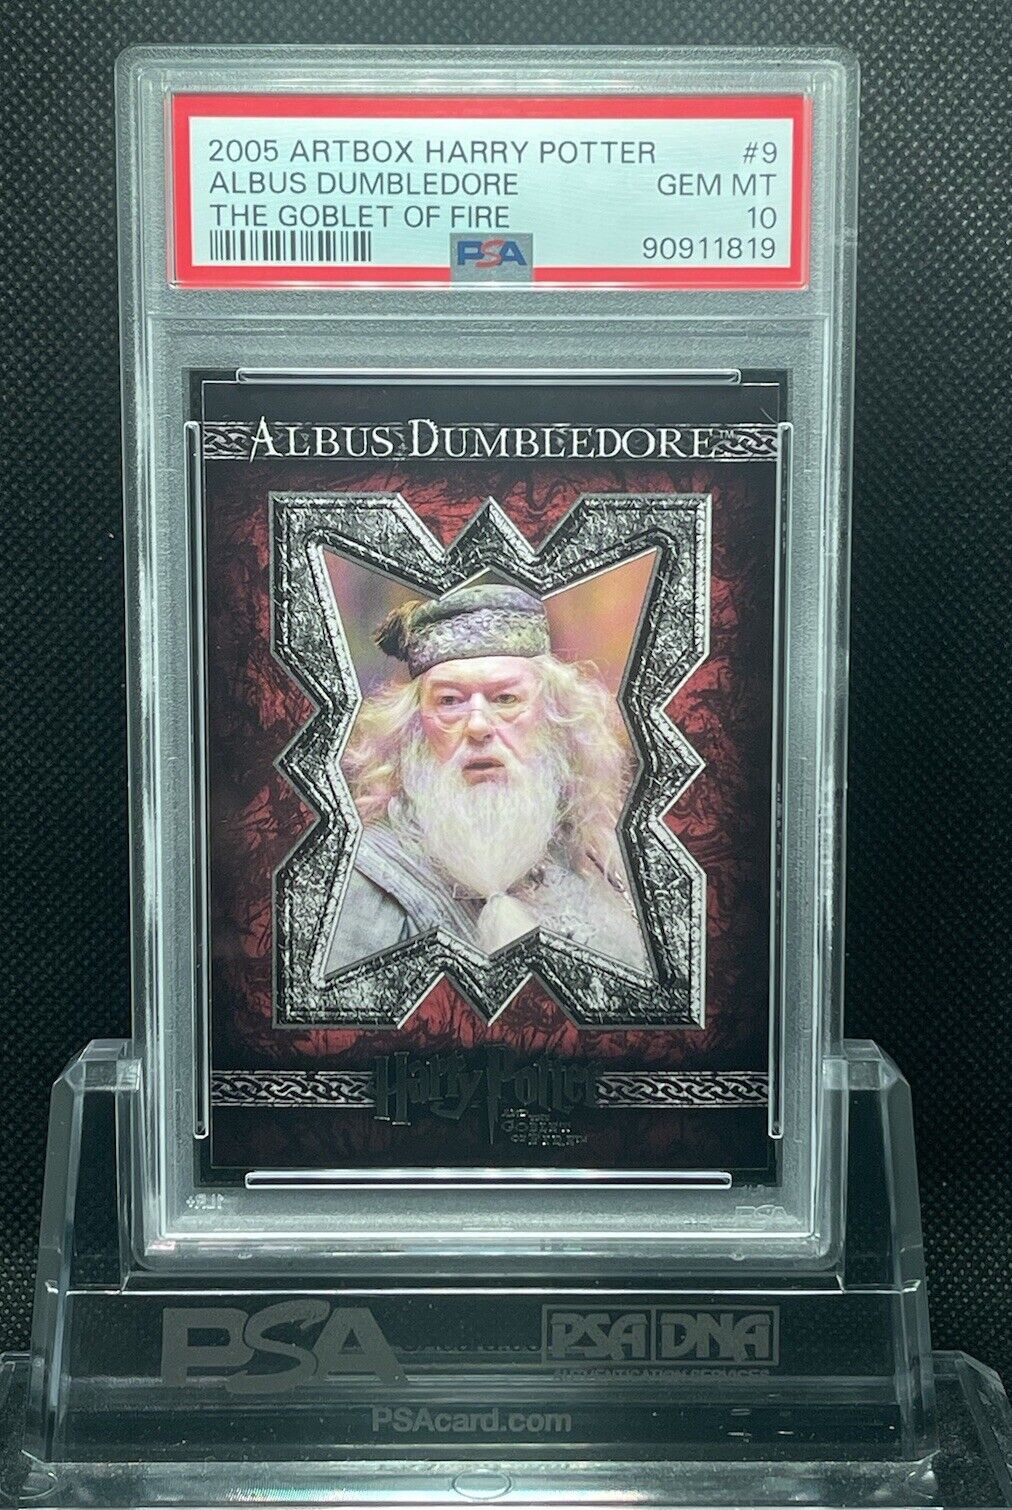 2005 Artbox Harry Potter Albus Dumbledore Goblet Of Fire #9 PSA 10 Gen Mint